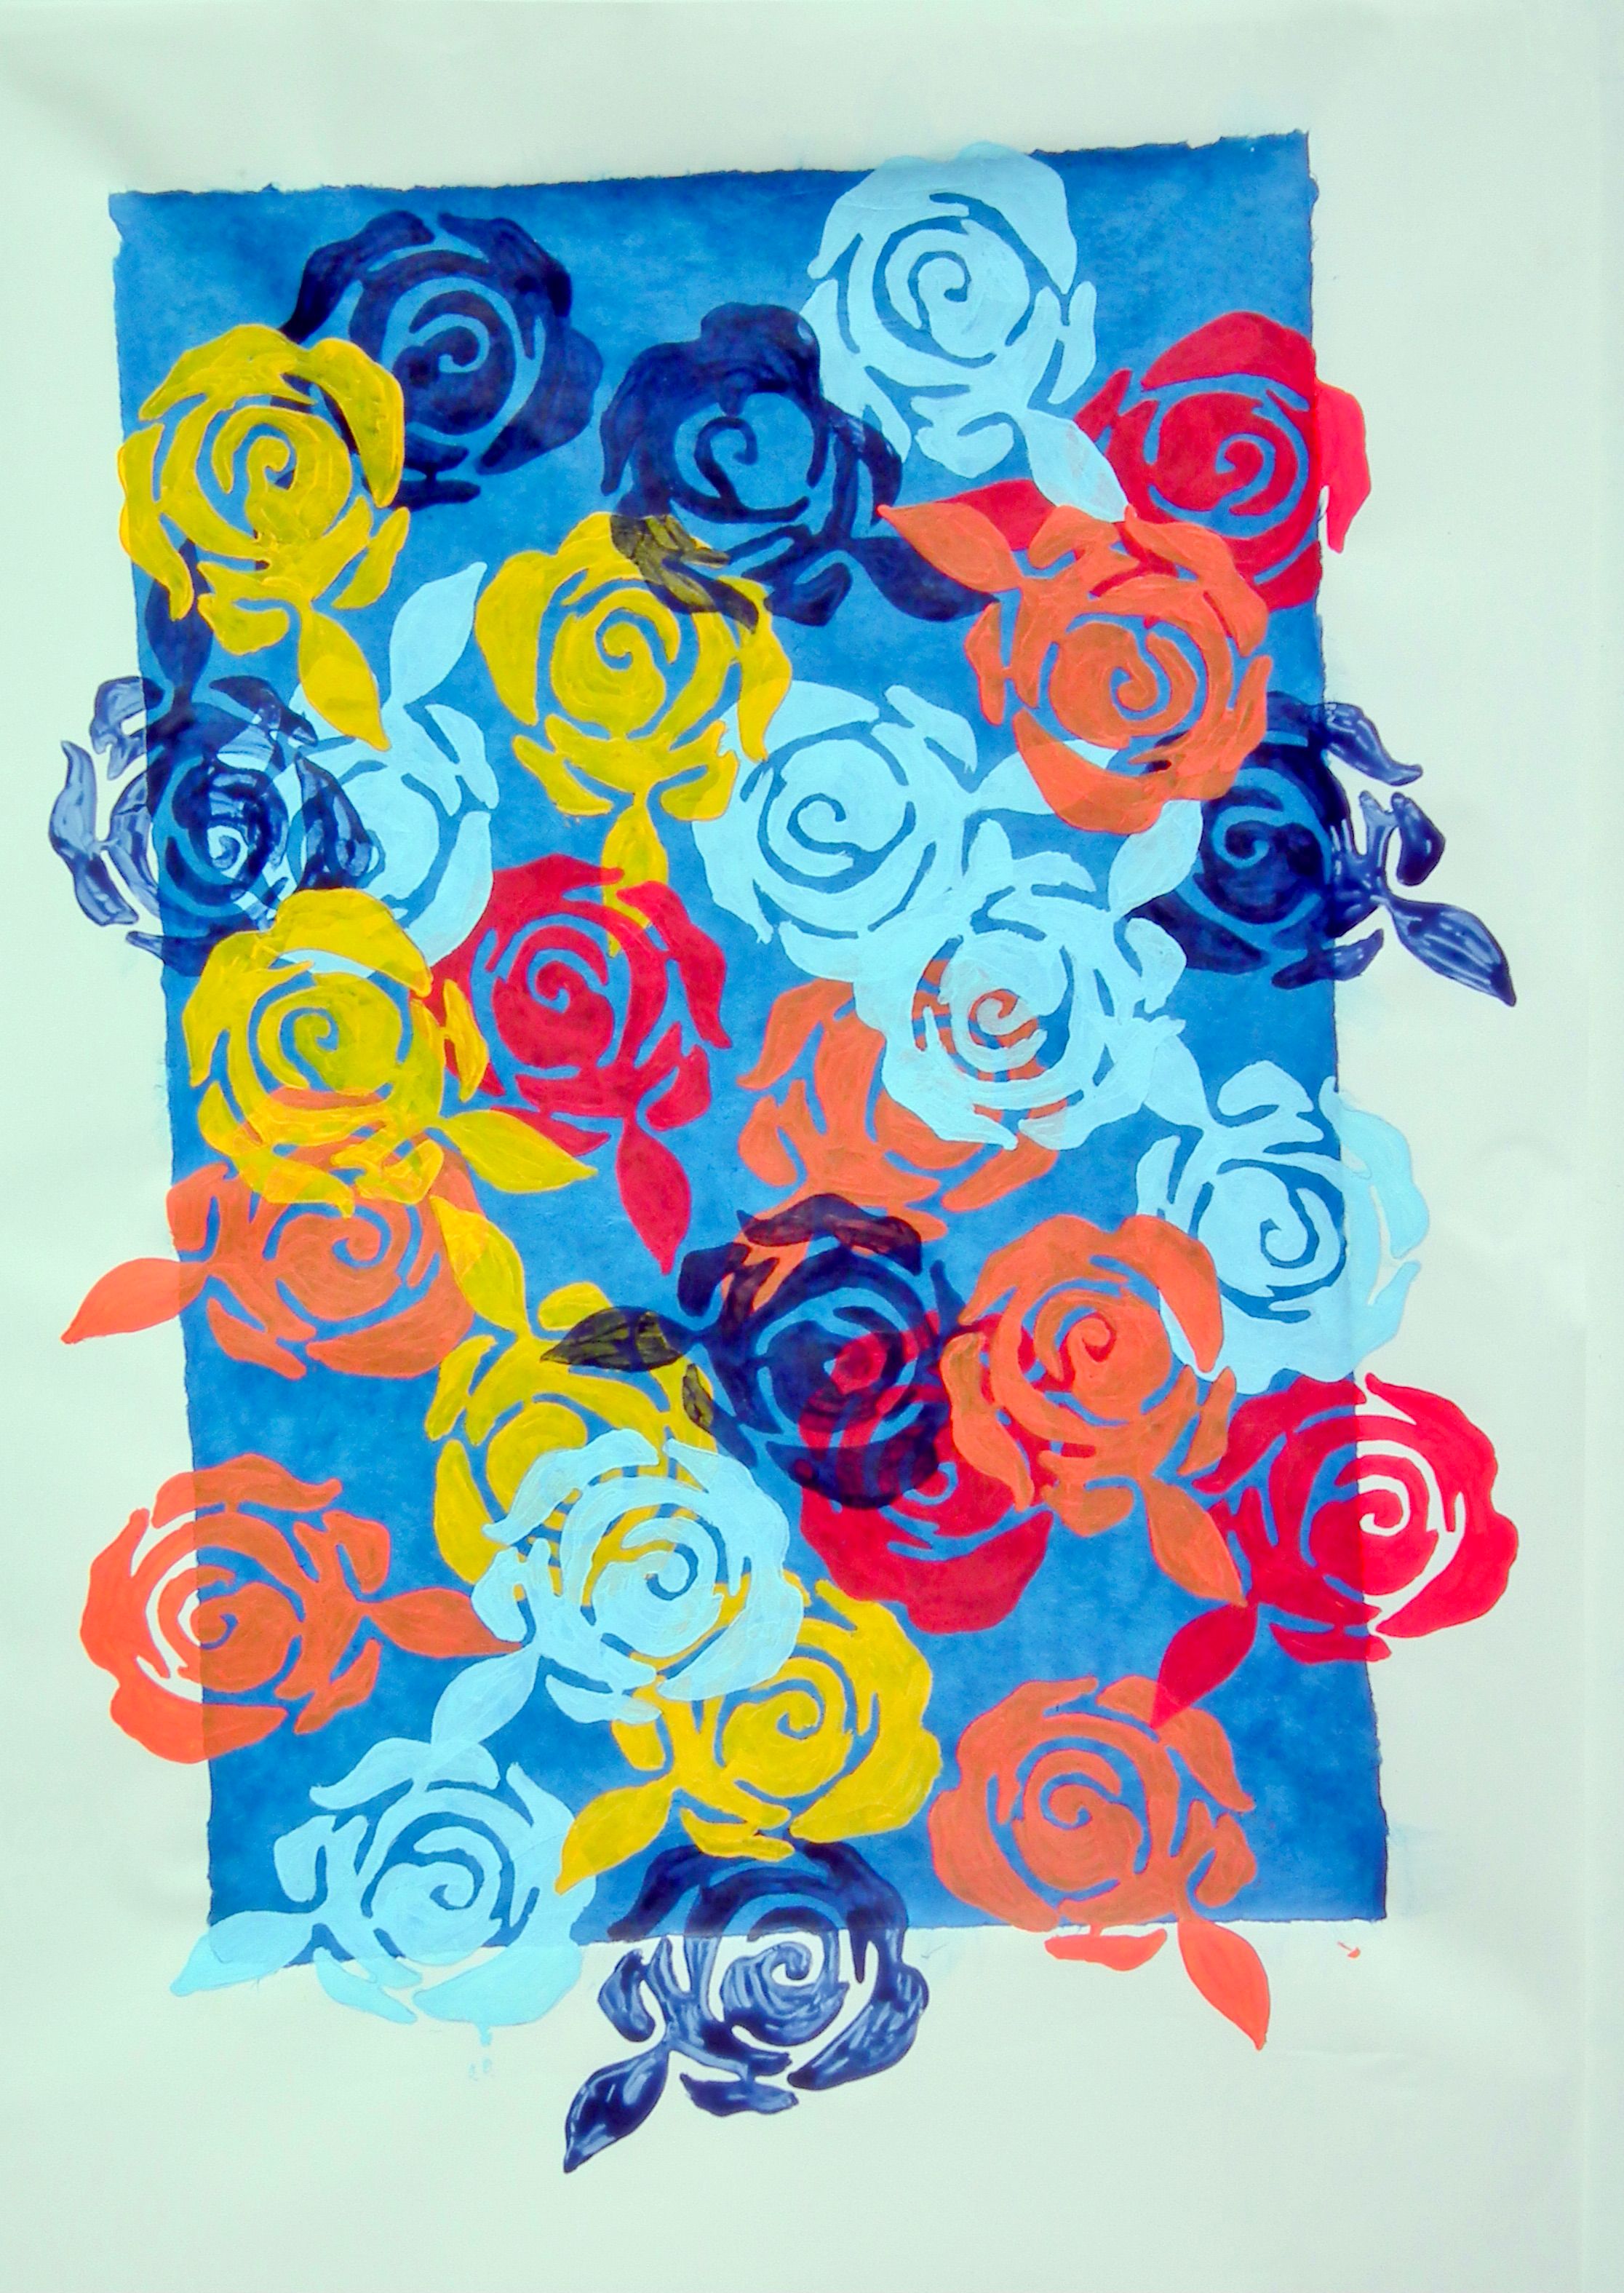 Ronny Cameron's "Flower Basket" figurative abstrakte Malerei zeigt farbenfrohe Blumen auf Papier.